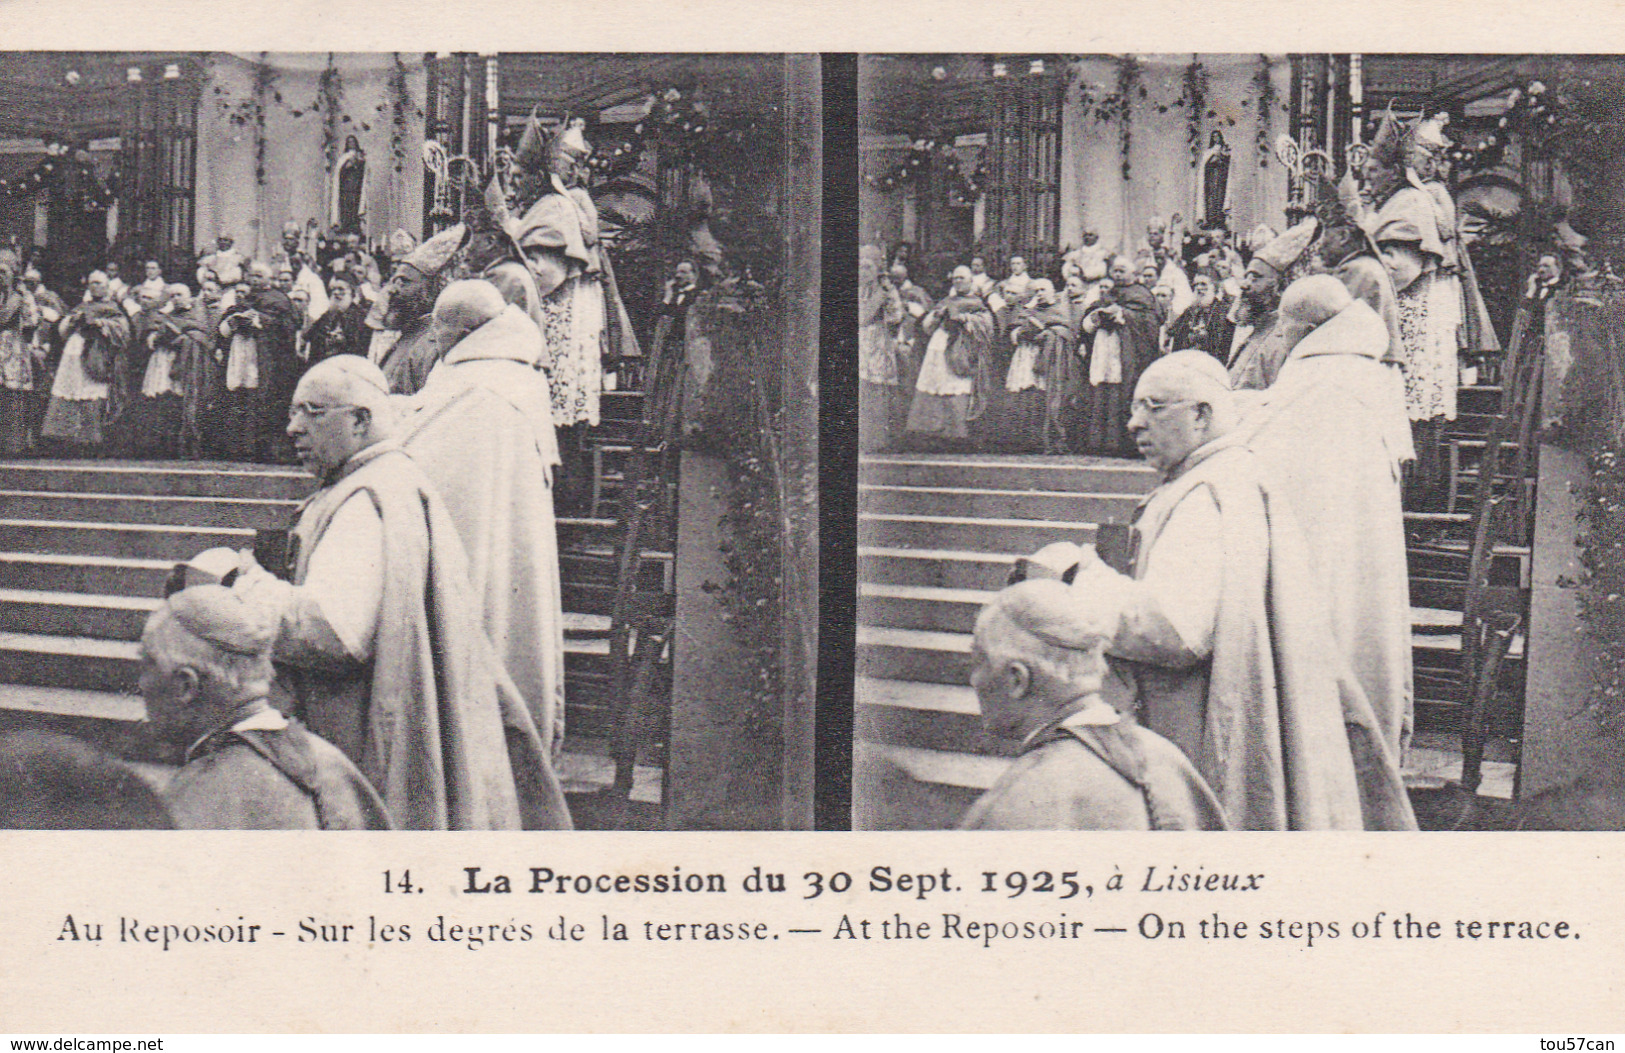 LISIEUX - CALVADOS - (14) - BON LOT 19 CPA STÉRÉO ANIMÉES - LA PROCESSION DU 30 SEPTEMBRE 1925.